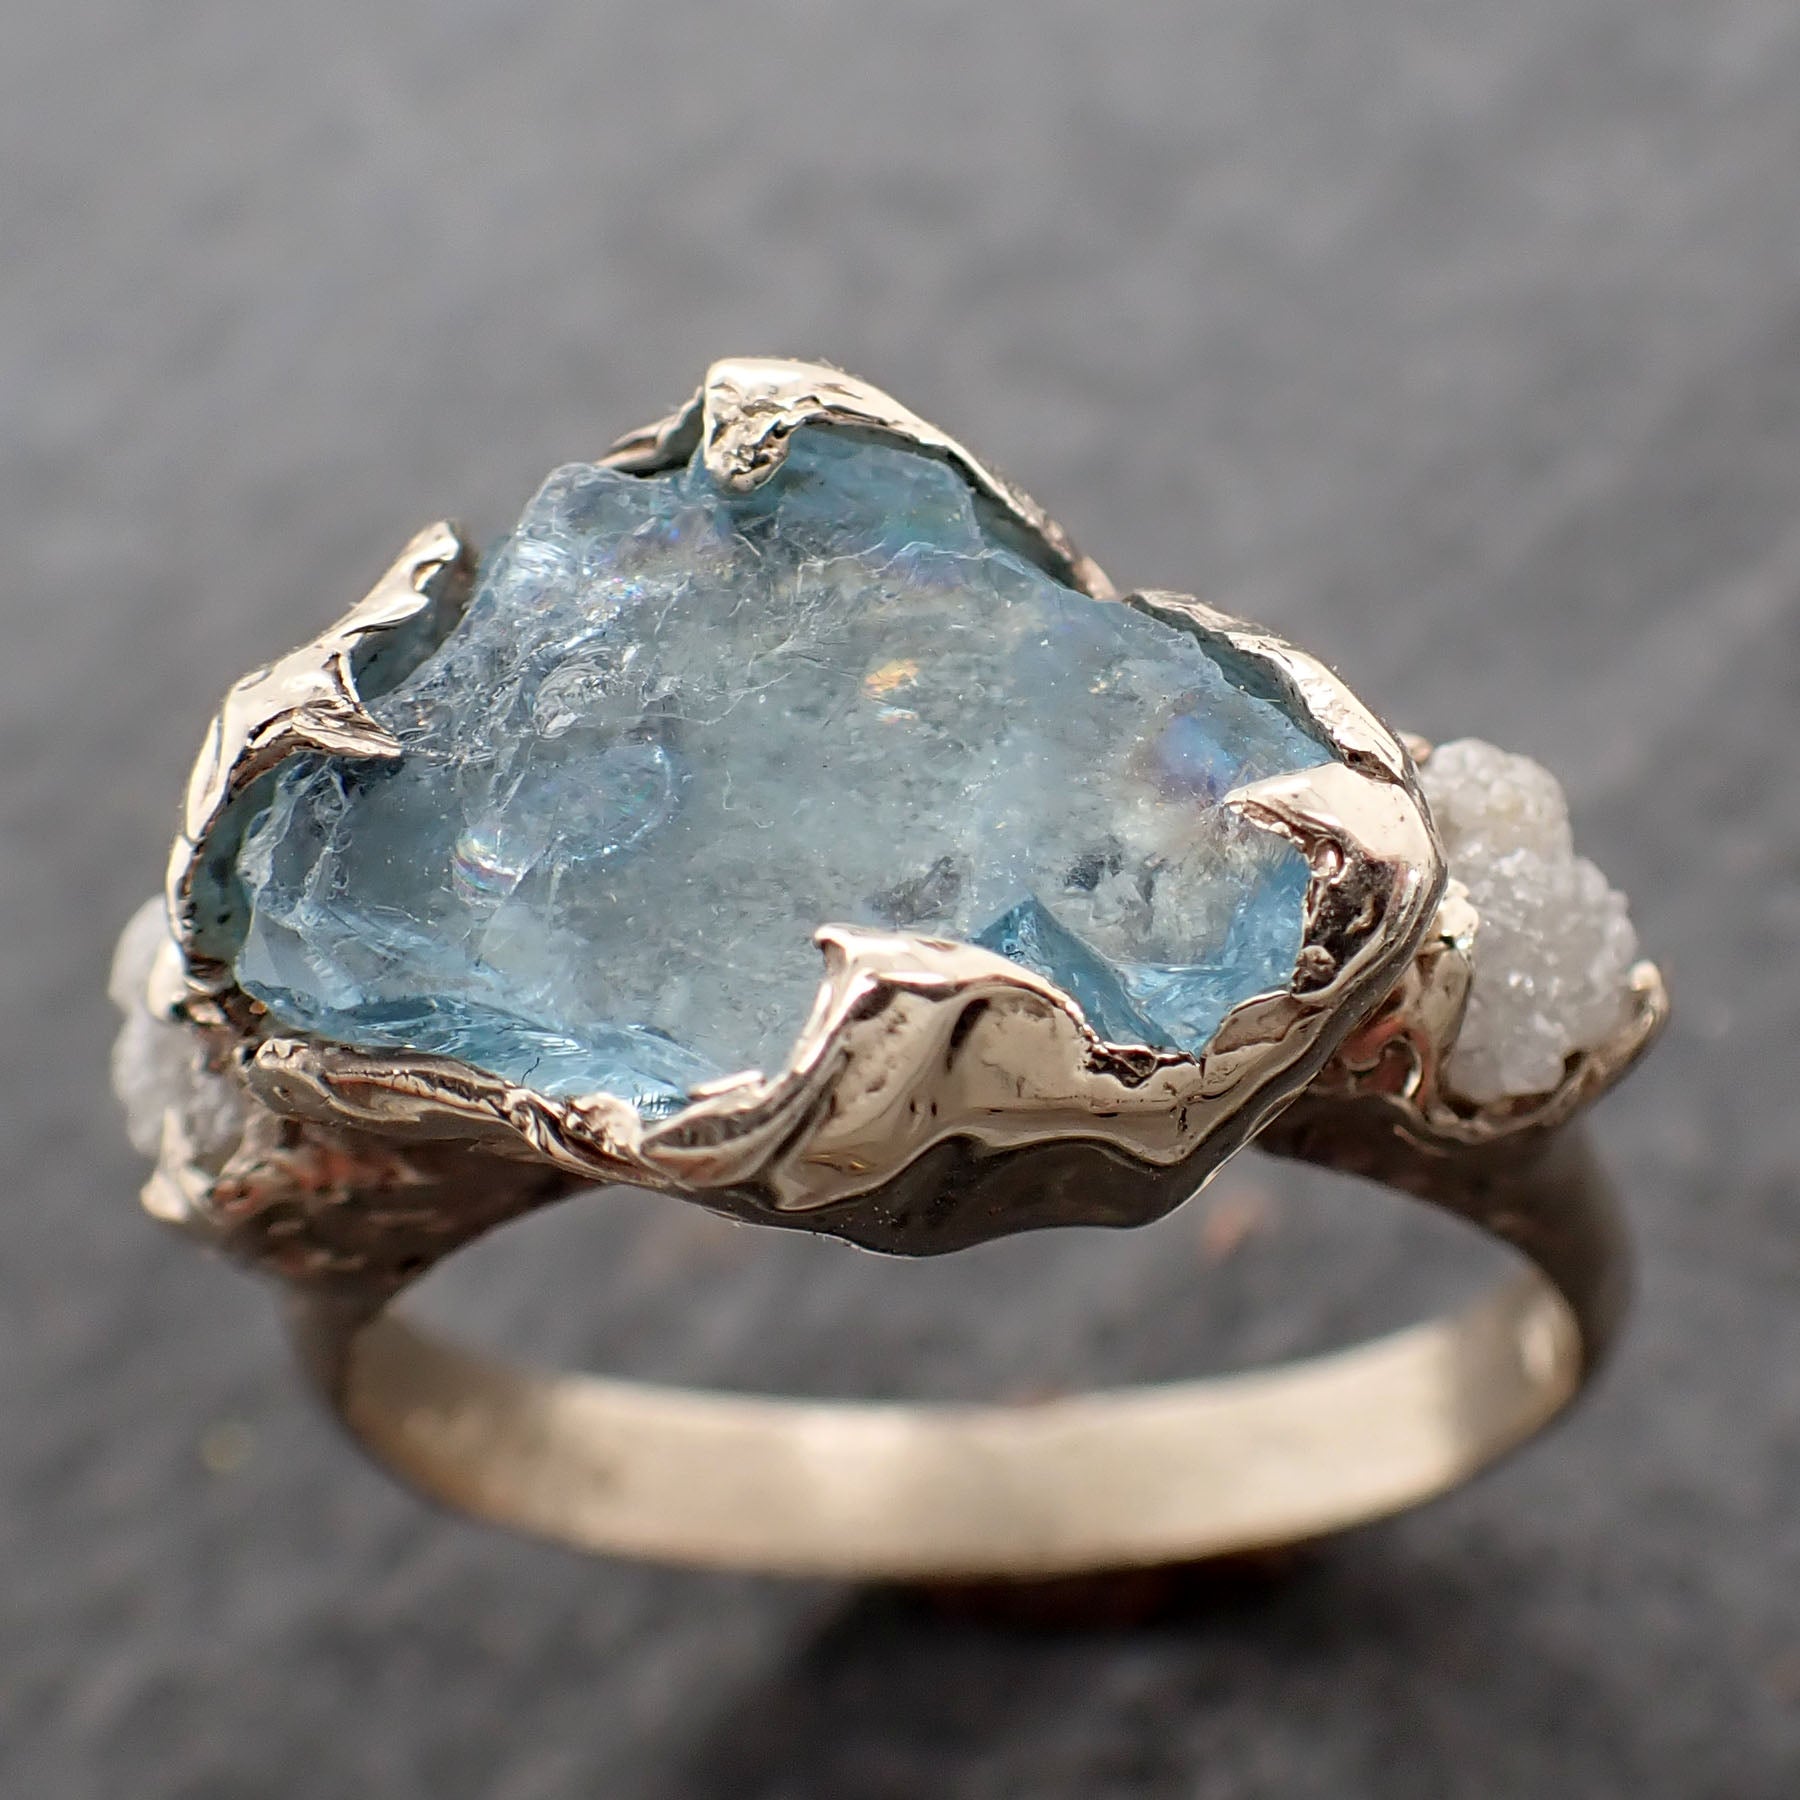 large Raw Uncut Aquamarine Diamond White Gold Engagement Ring Wedding Ring Custom One Of a Kind Gemstone Ring Multi stone Ring 2544